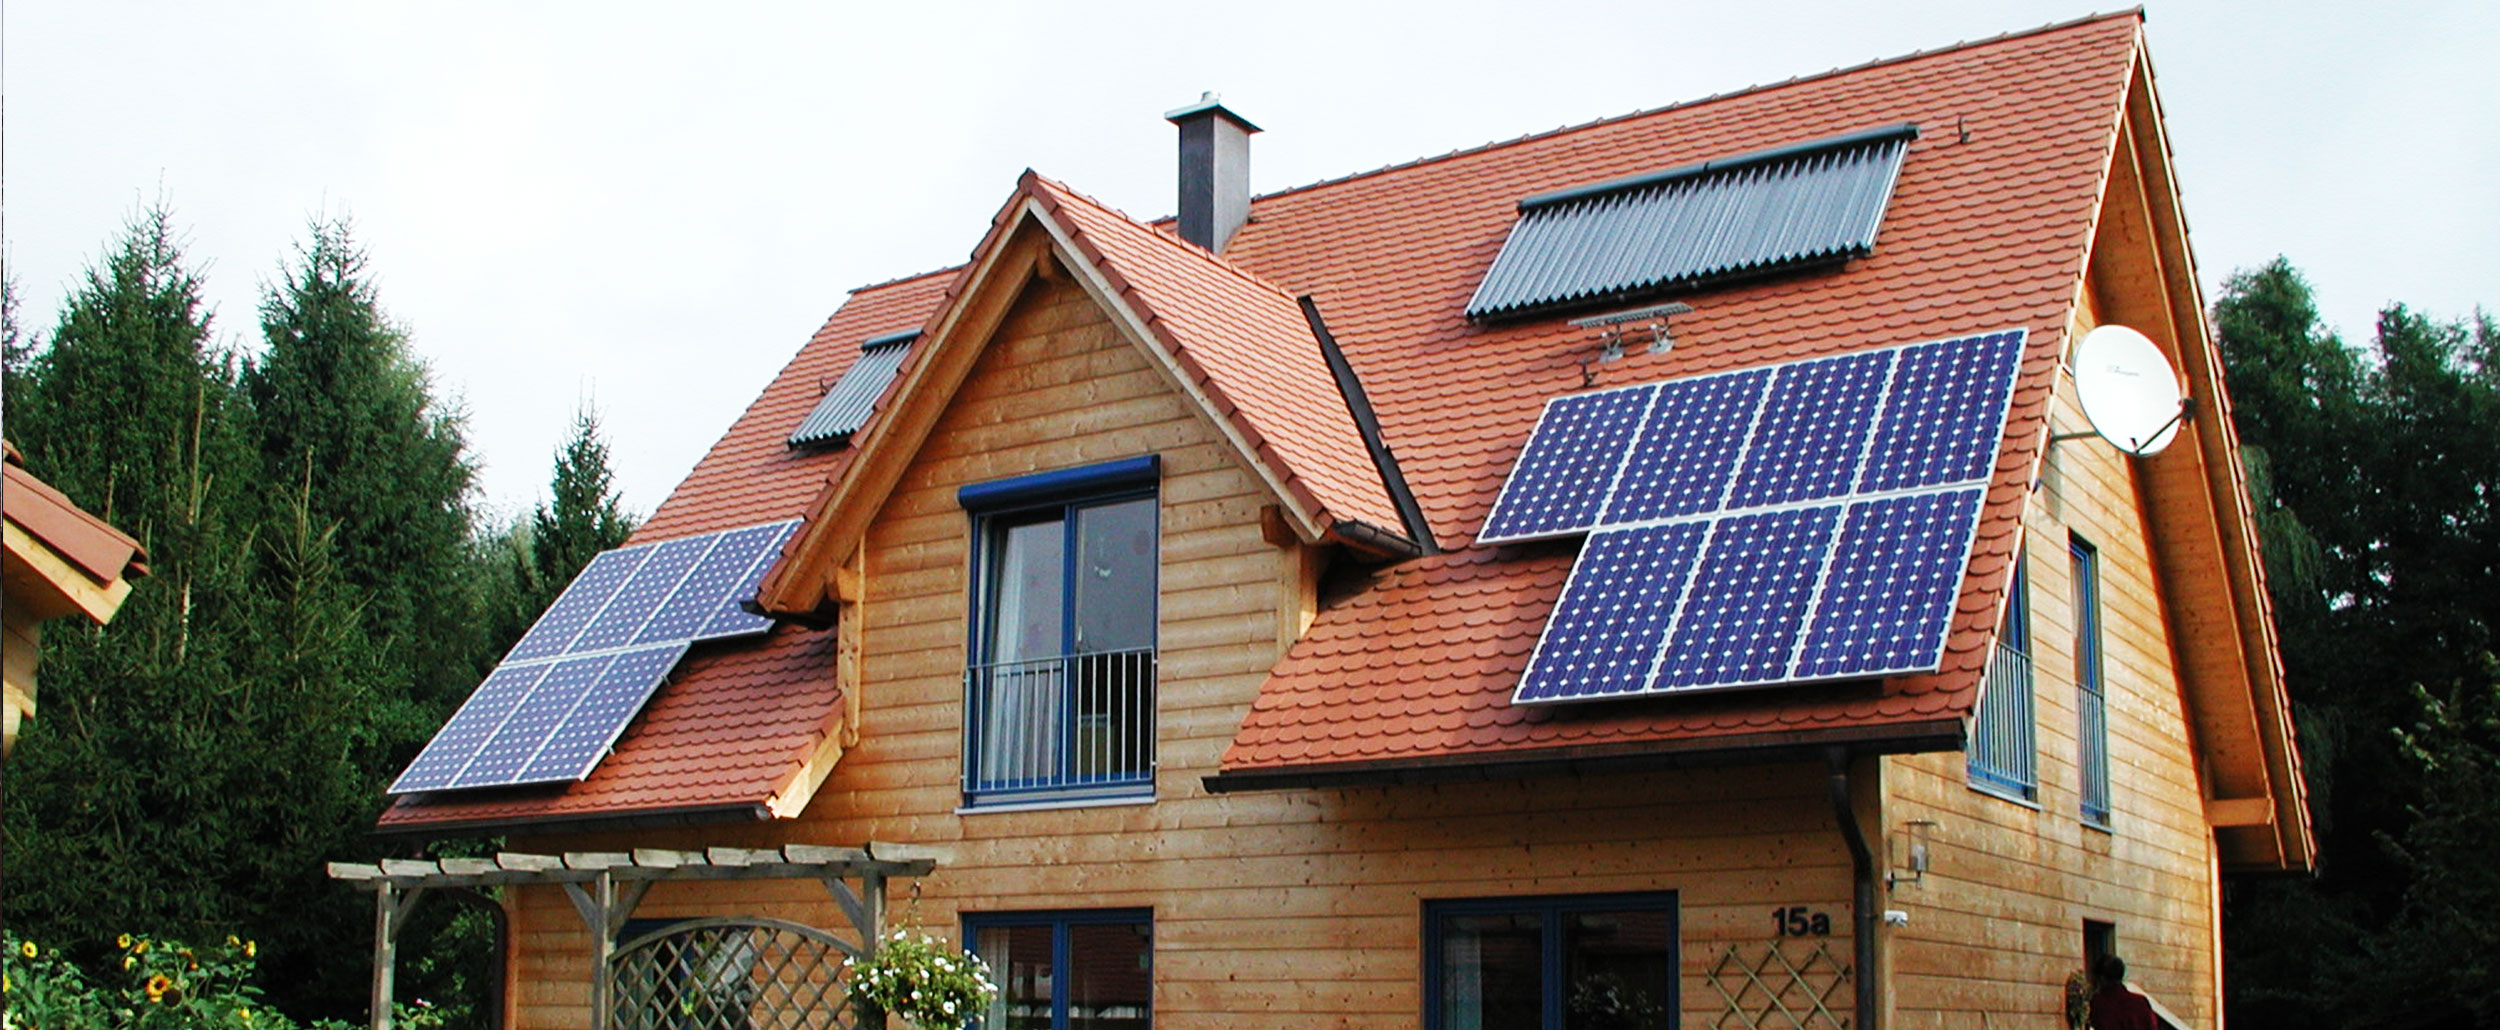 Privathaus mit Solaranlage